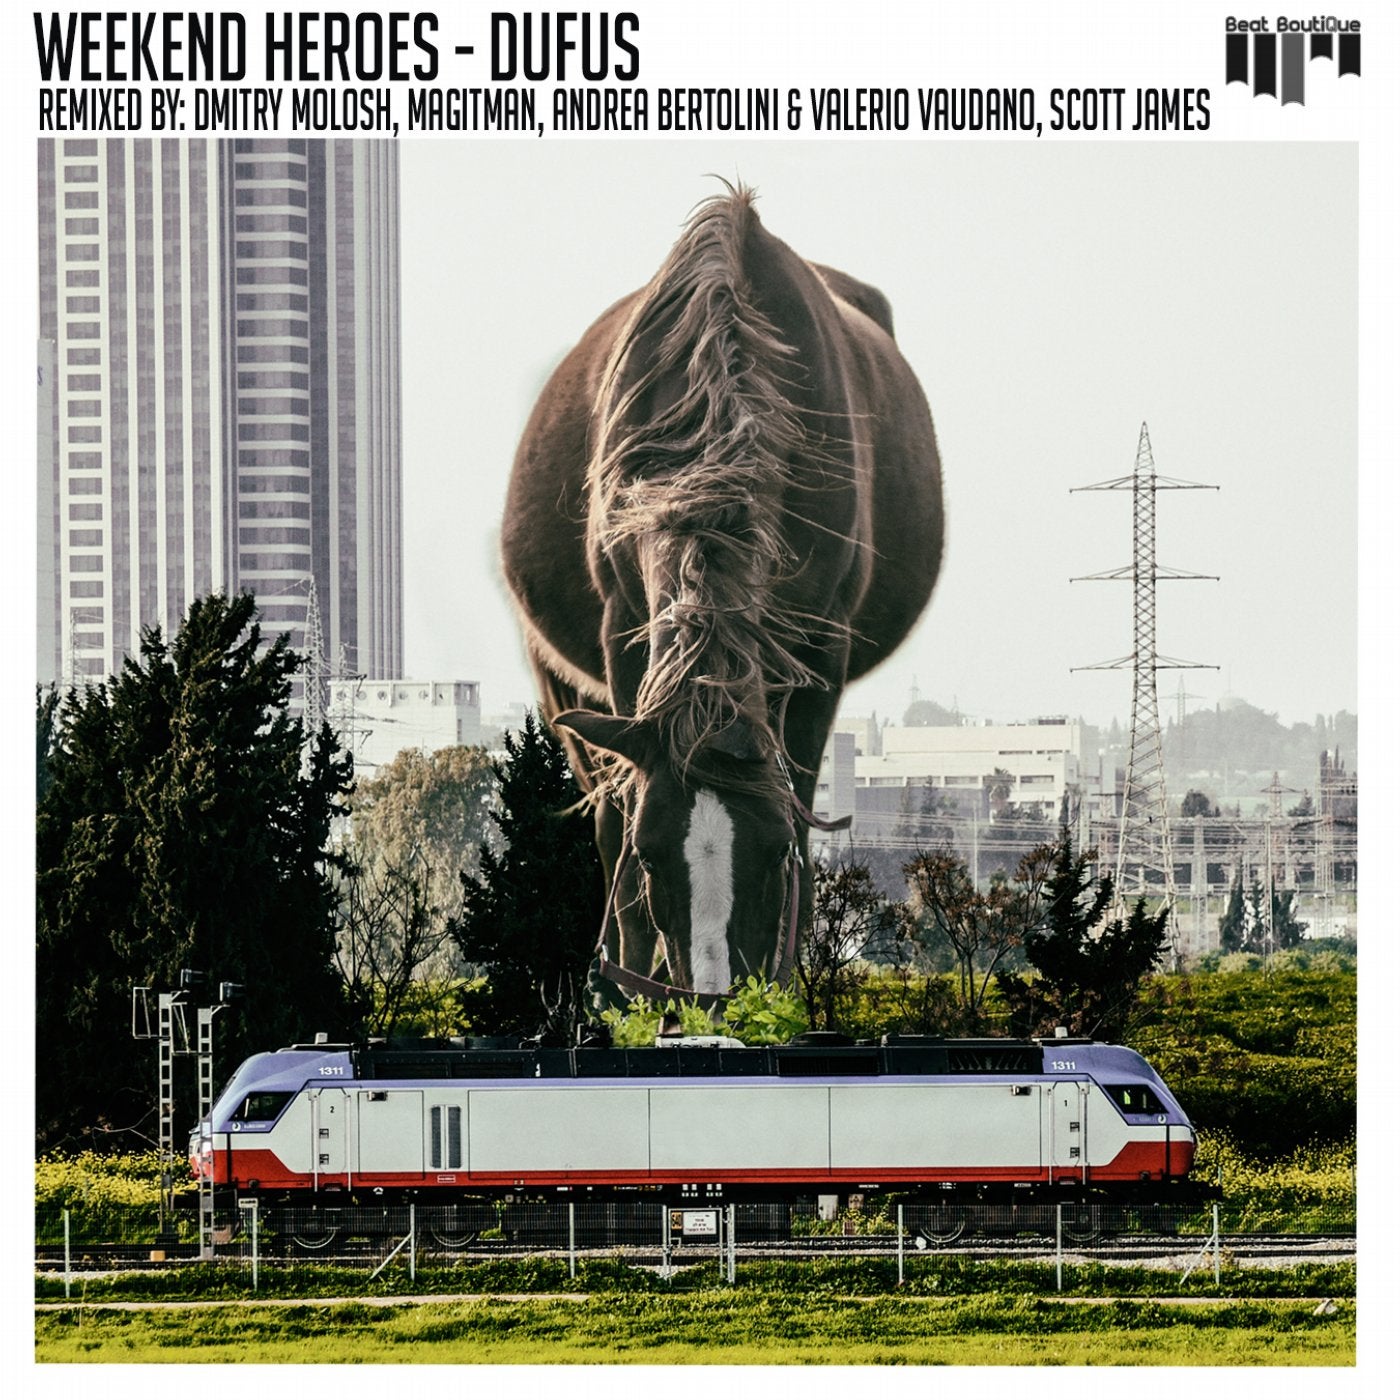 Weekend heroes. Weekend's Heroes группа. Dufus. Weekend Heroes - ne'x (Original Mix). Weekend's Heroes анд d.n.k..